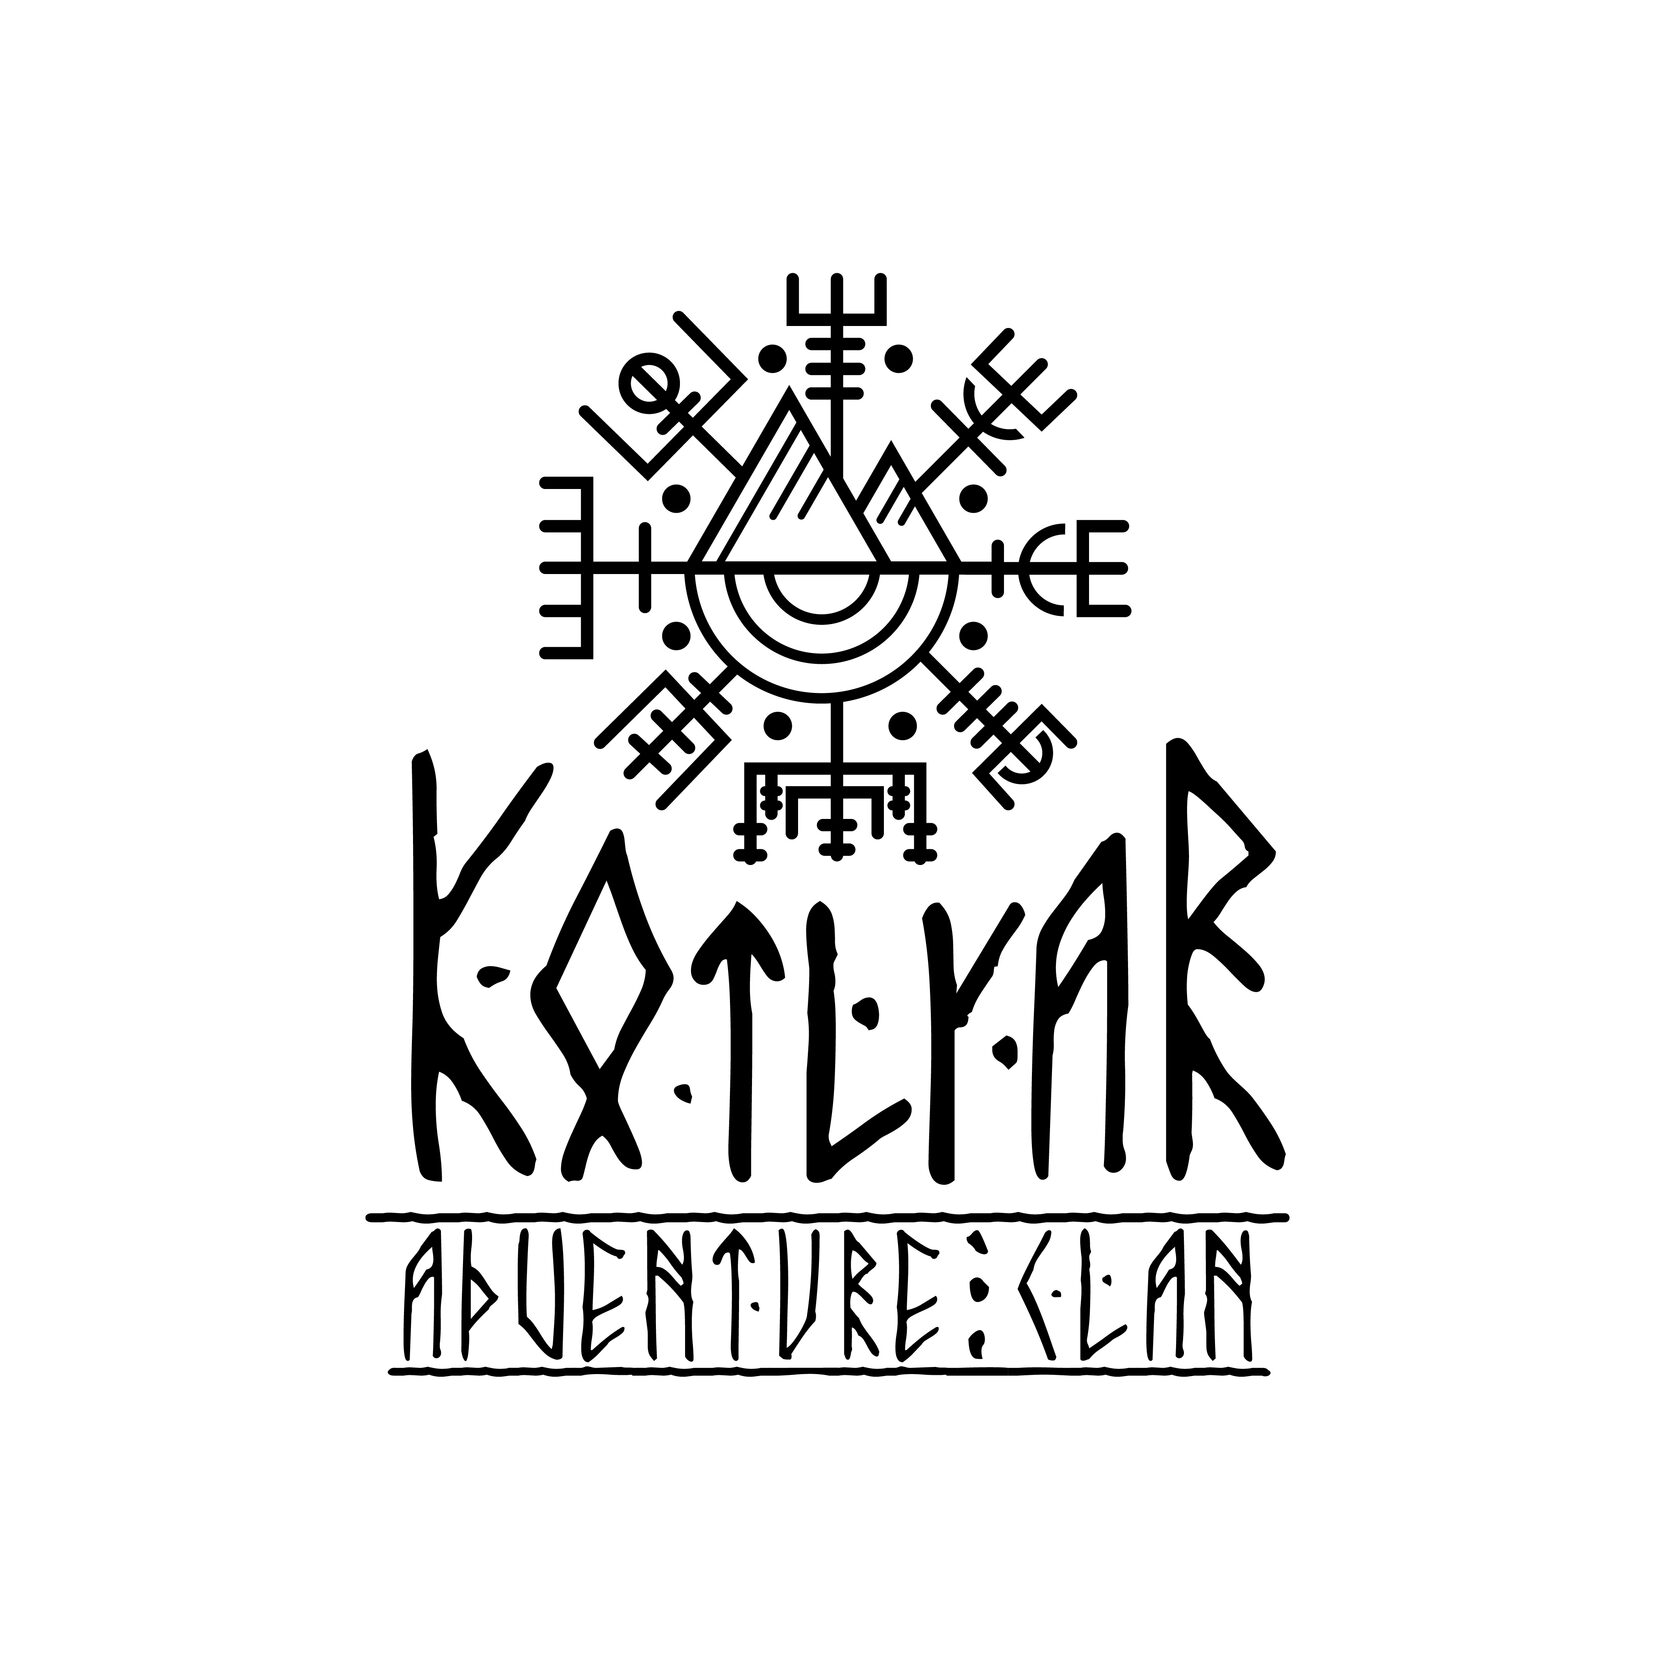 Kotlyar Adventure Clan